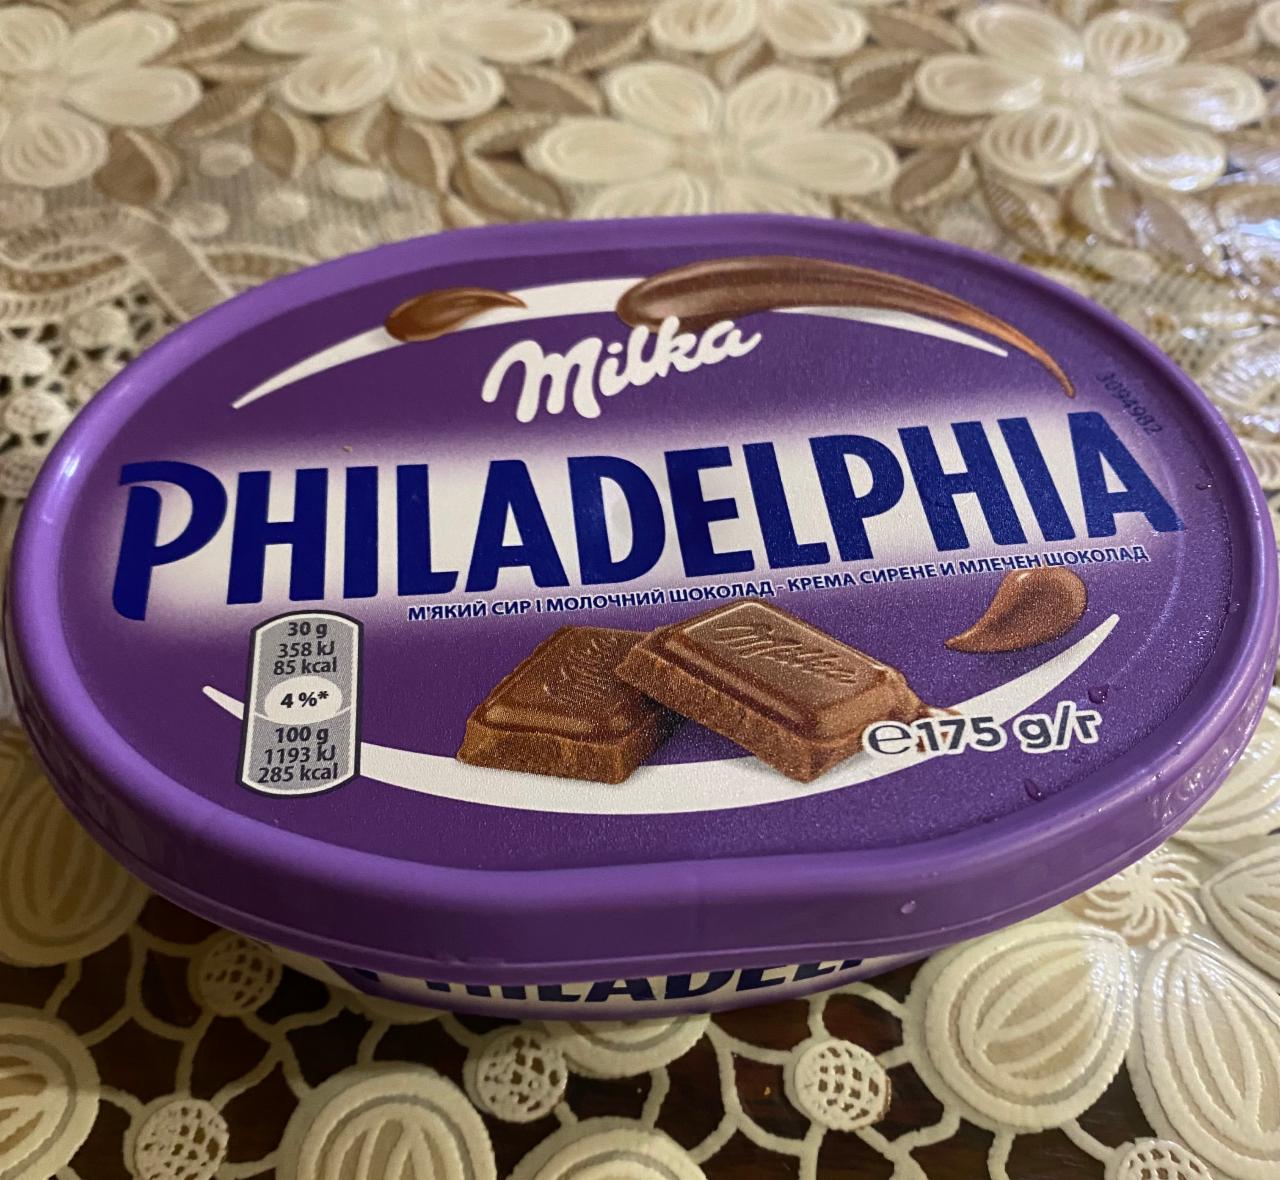 Фото - Сыр 22% мягкий с молочным шоколадом Milka Philadelphia